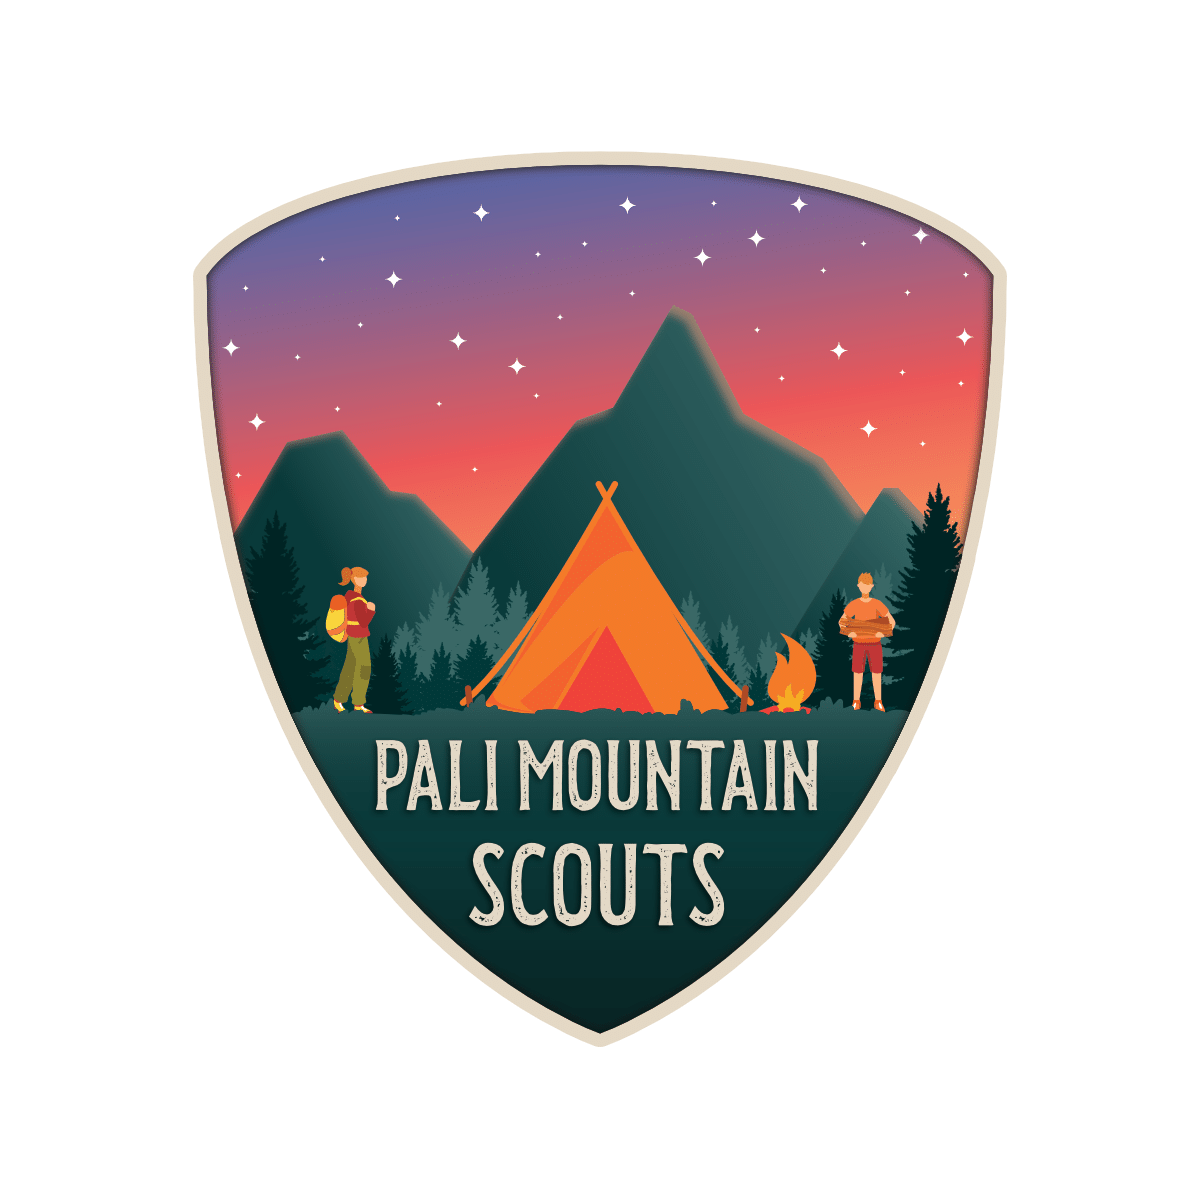 Pali Mountain Scouts logo.